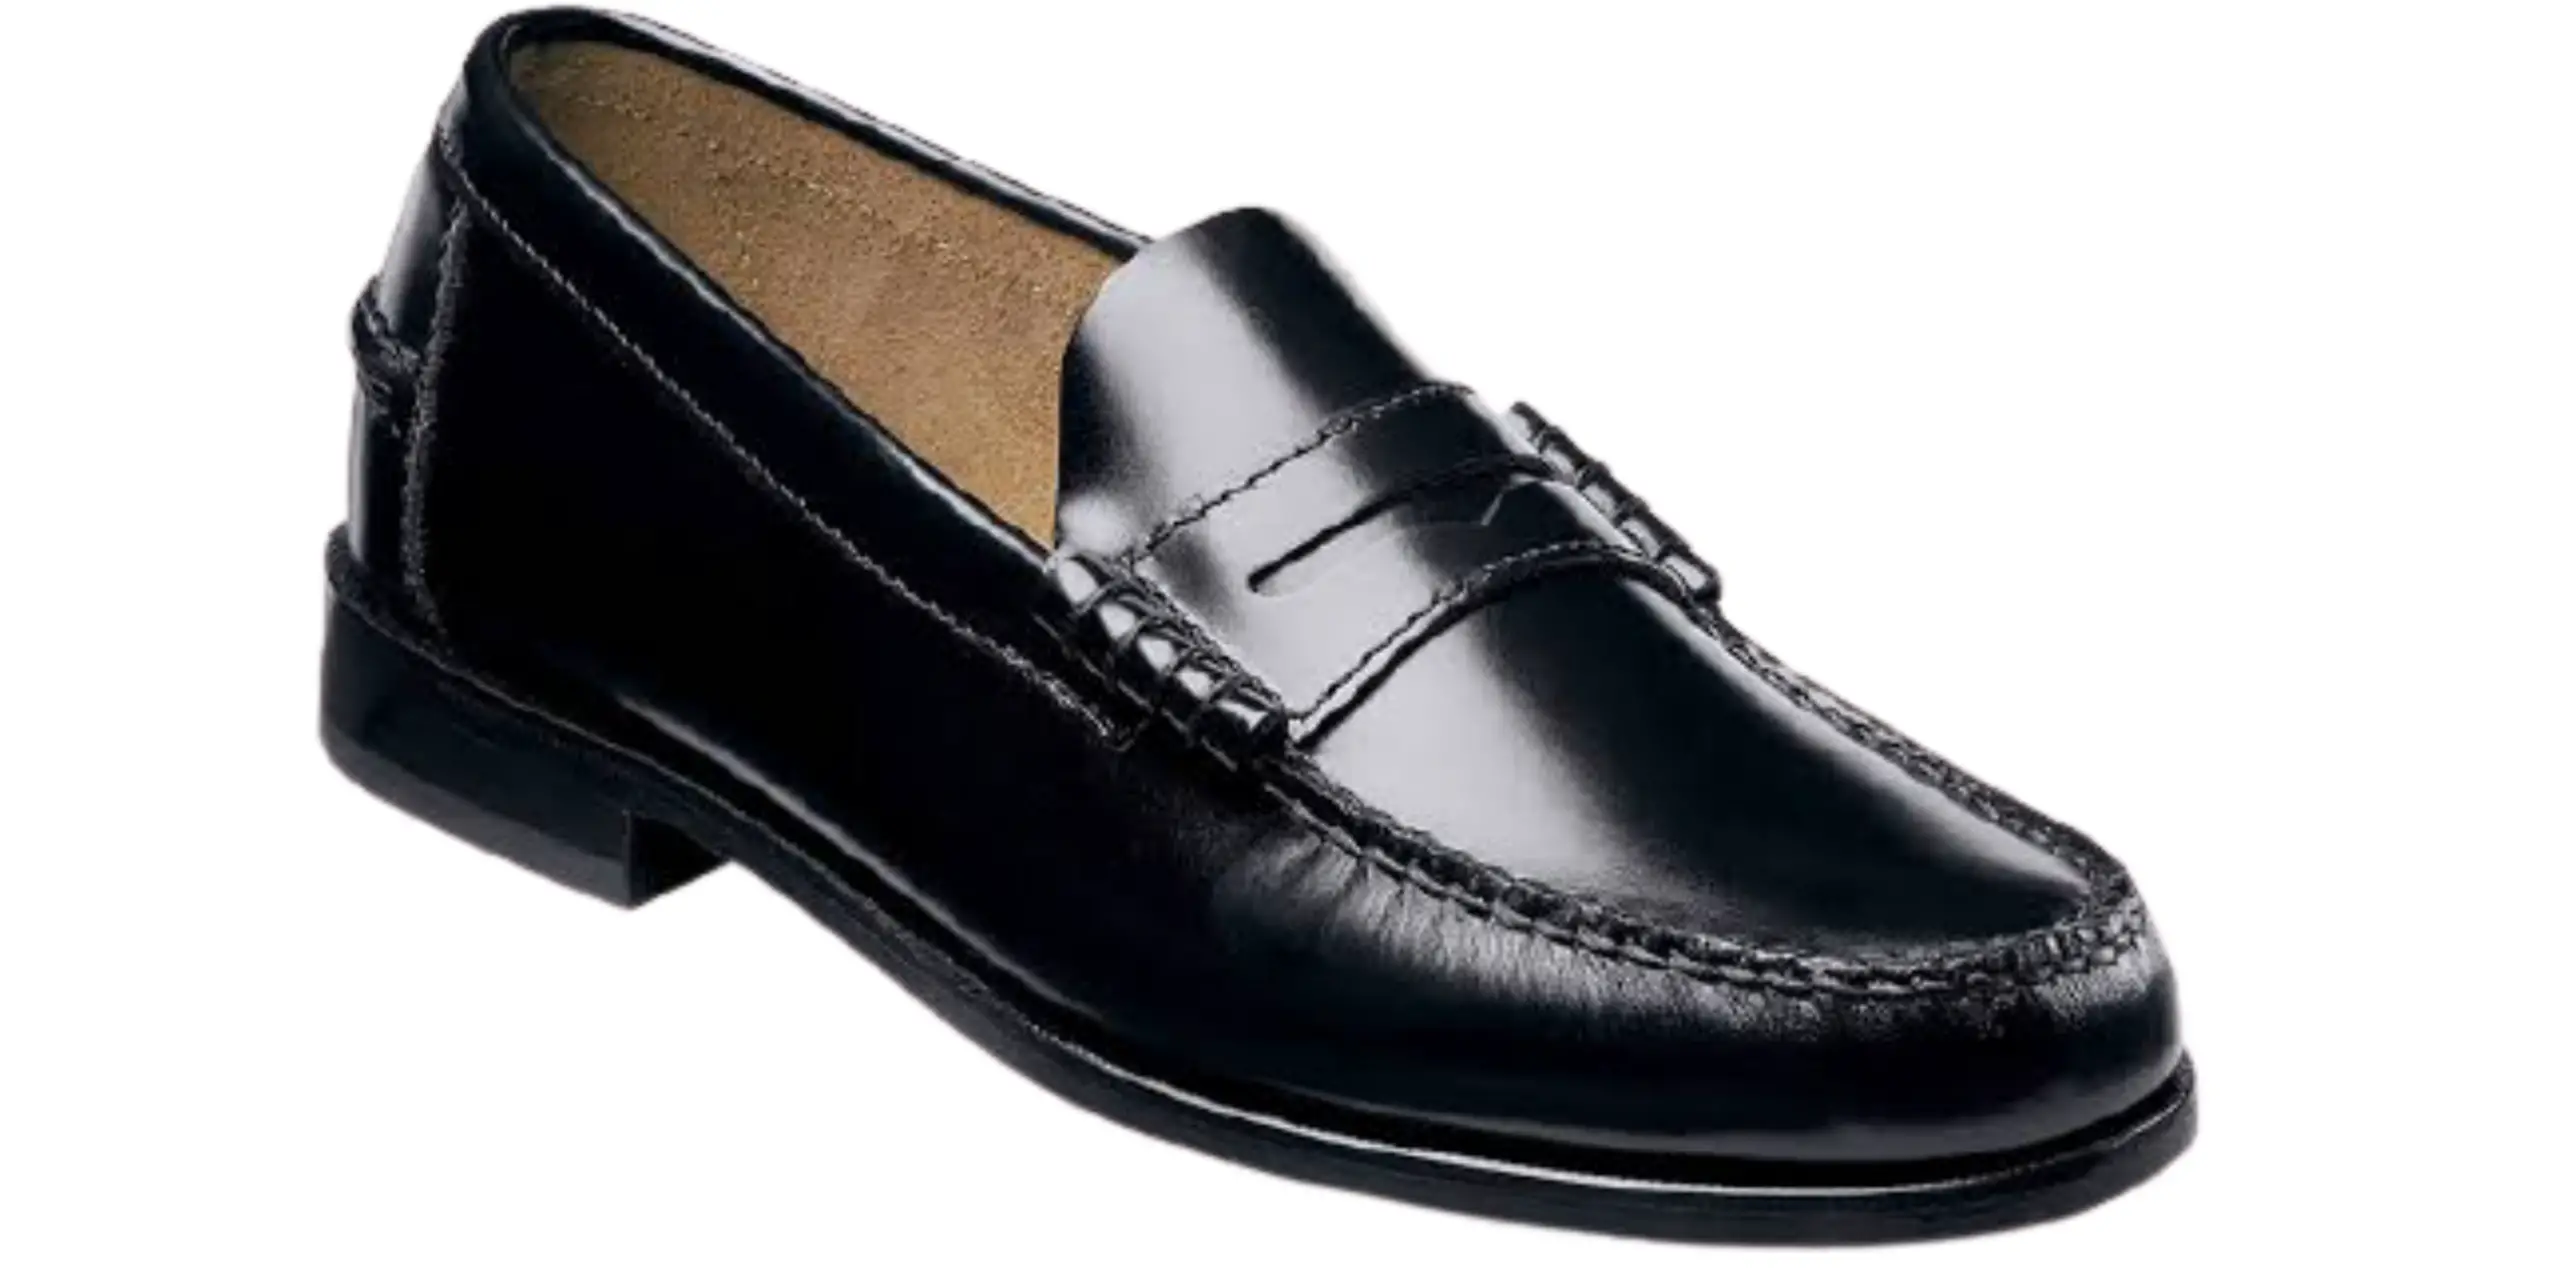 Loafer — Types of Men's Formal Shoes